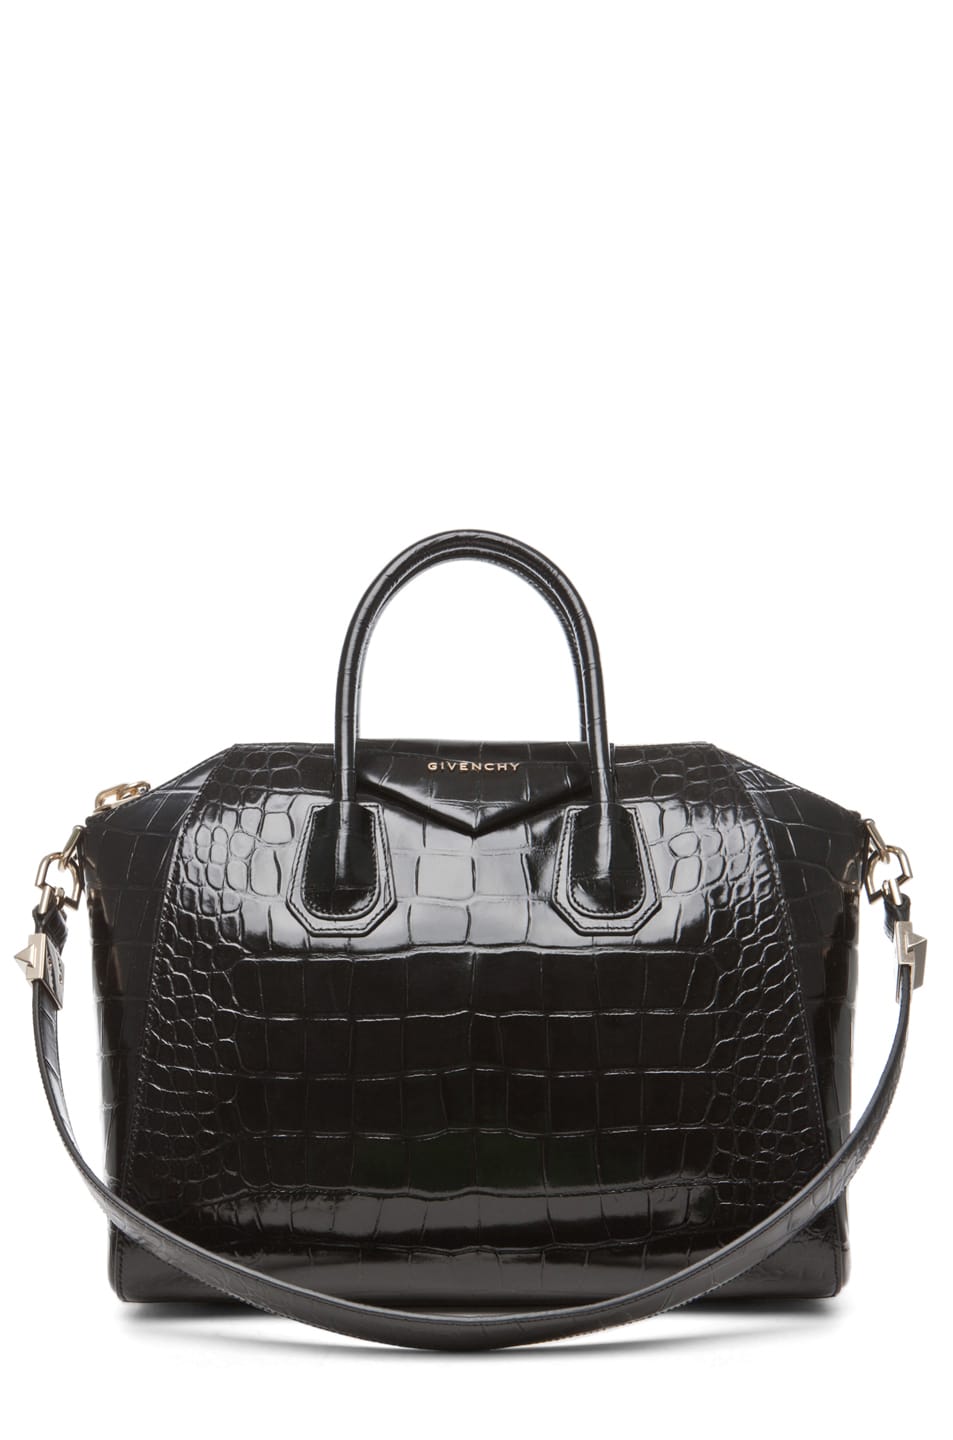 Forward by Elyse Walker, Givenchy Croc Antigona Bag, $2,405 USD